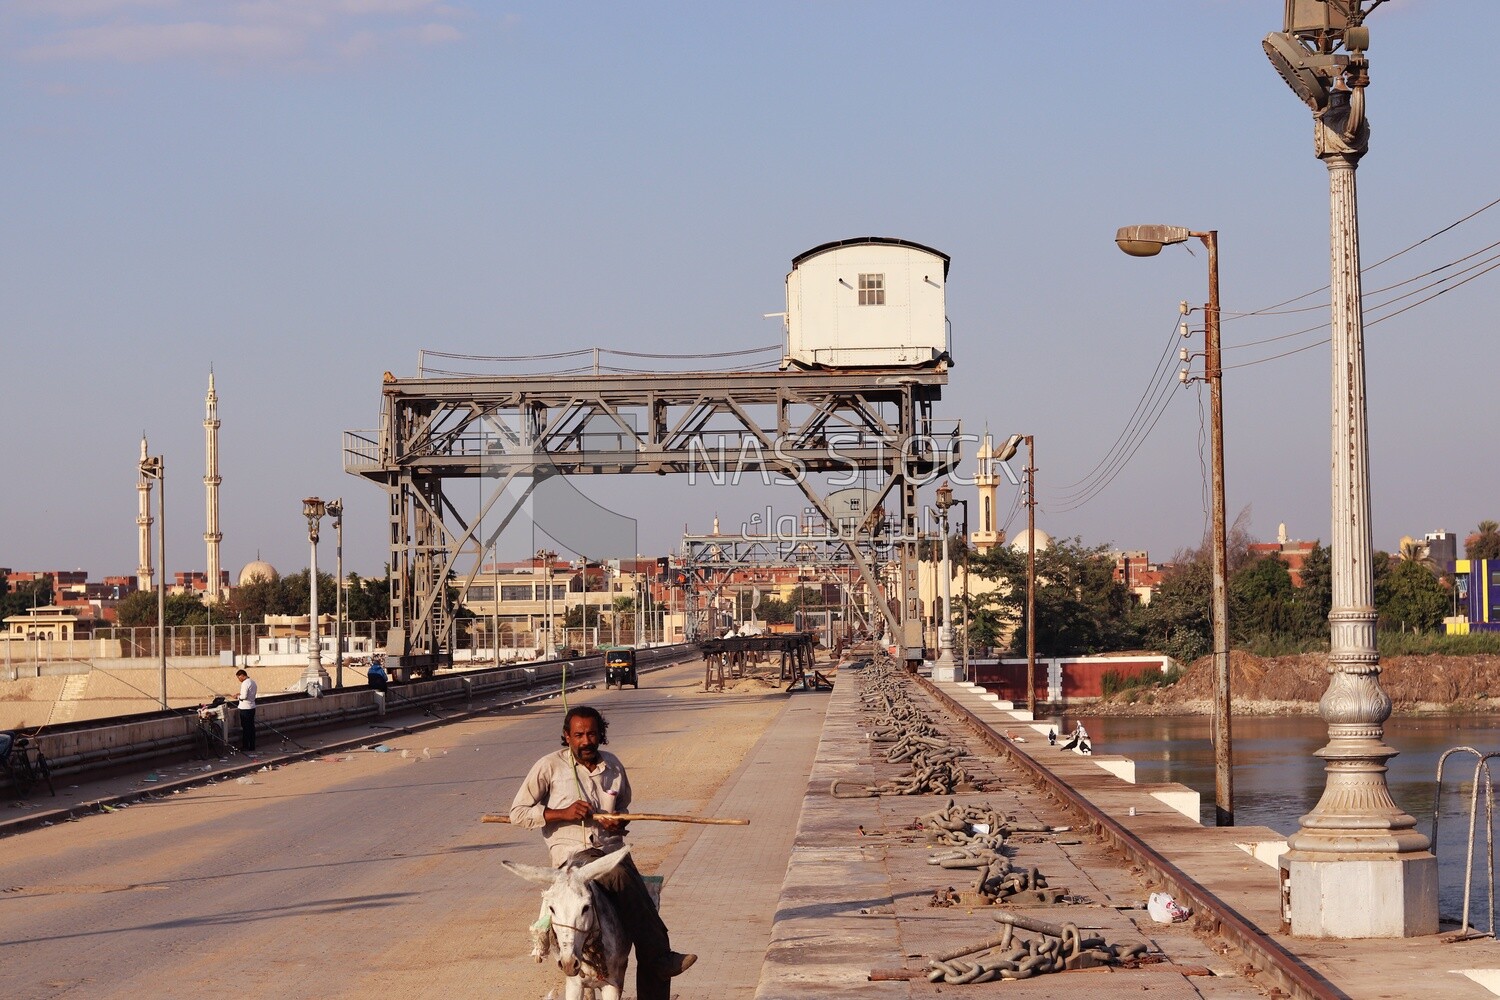 People walking on a bridge in el-gharbia